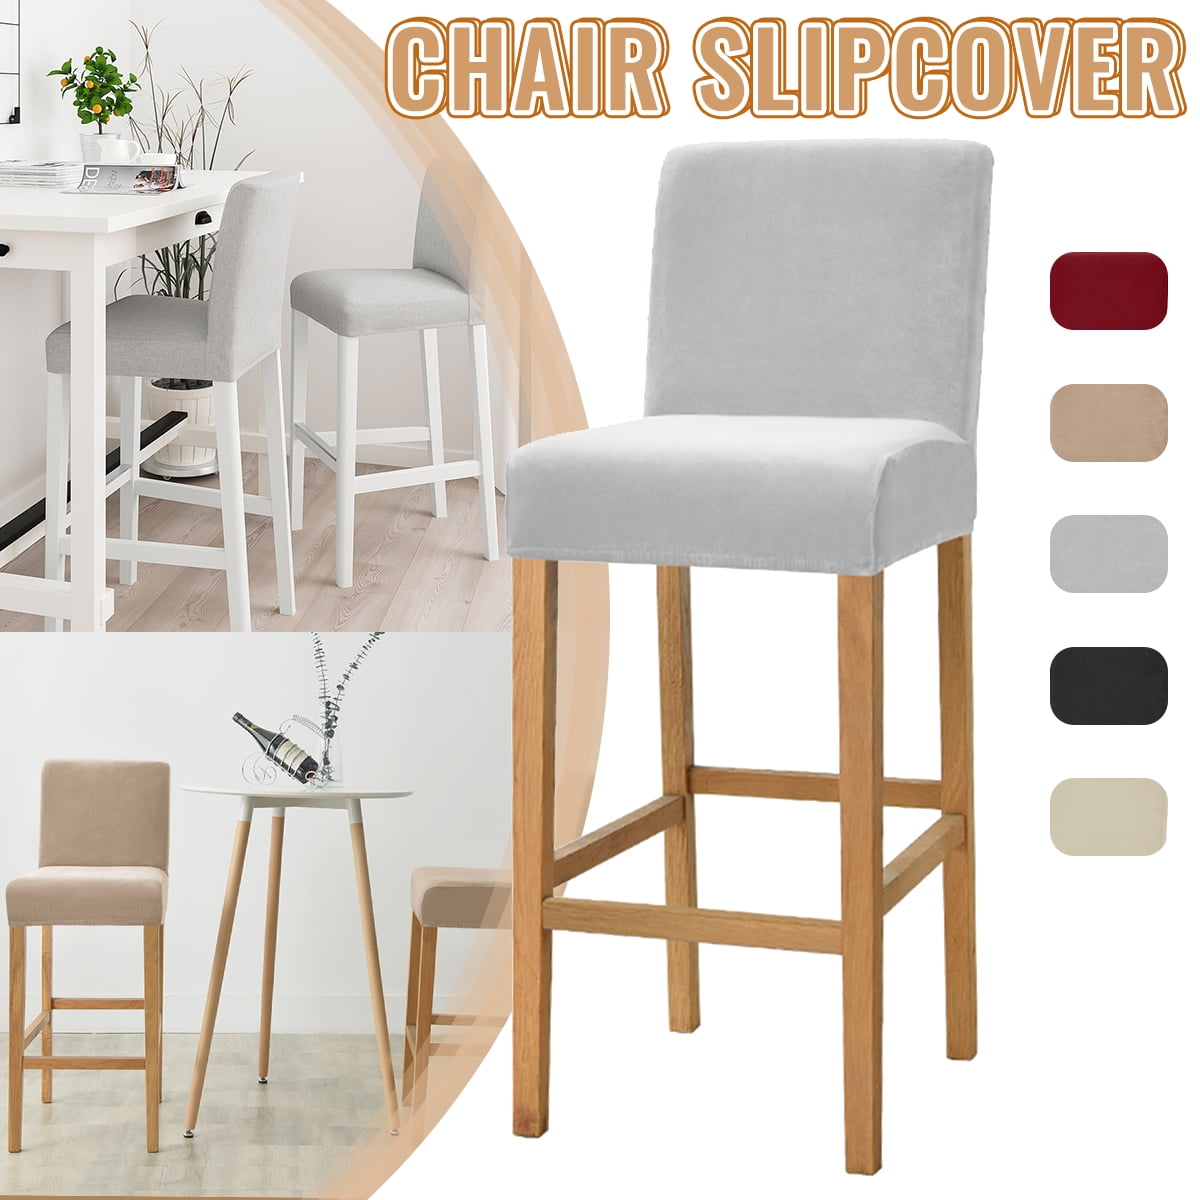 Stretchable velvet Short-back Chair Seat Cover Bar Stool Slipcover for Resturant 